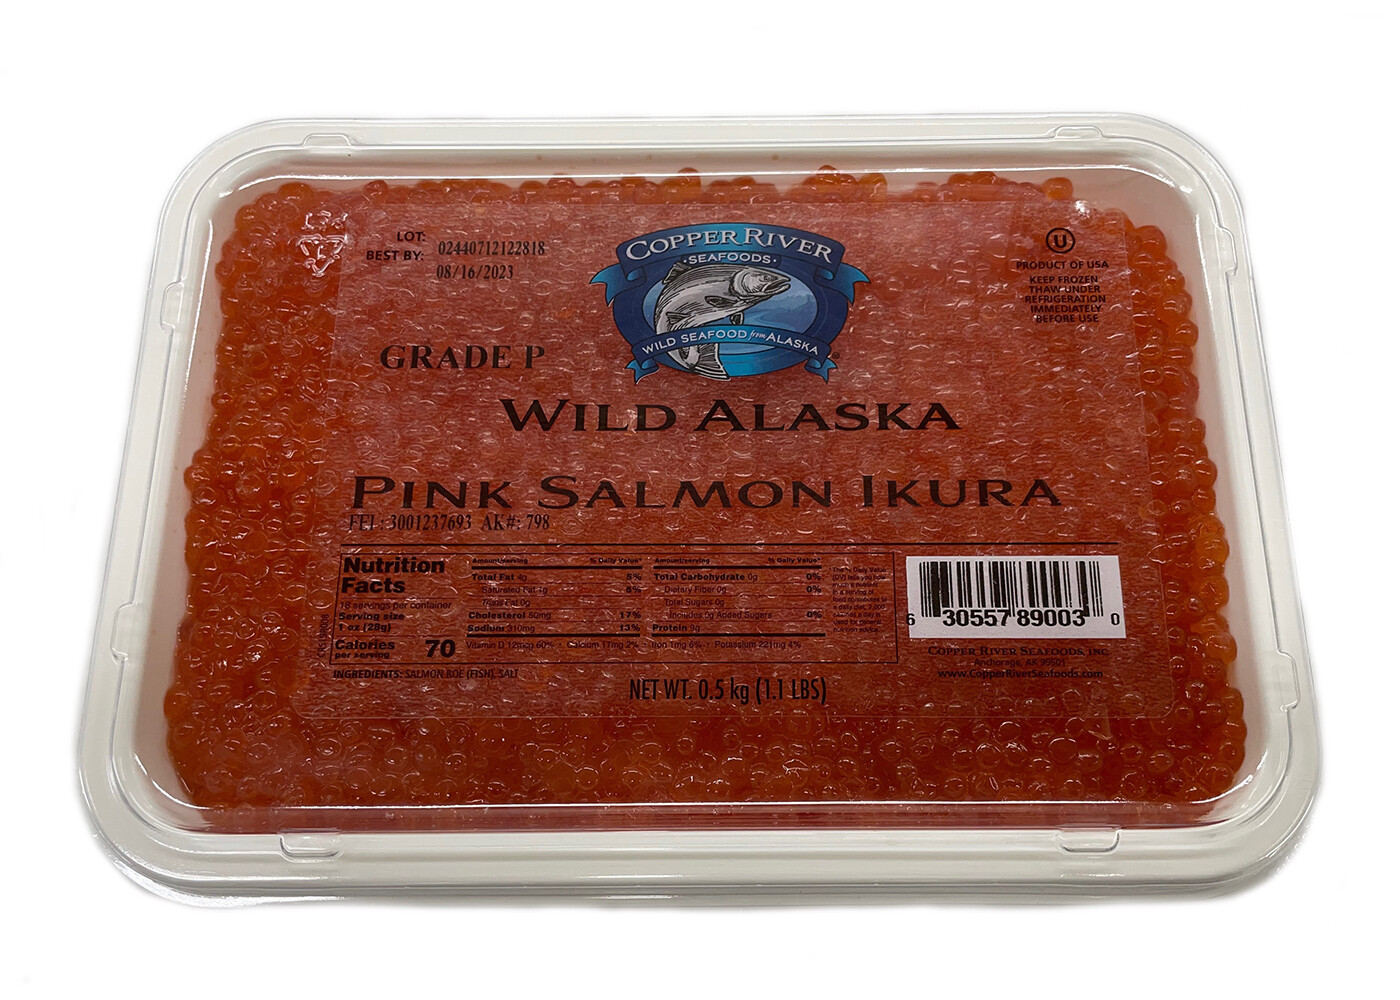 Wild Alaskan Pink Salmon Caviar Copper River Grade P 17.6 oz